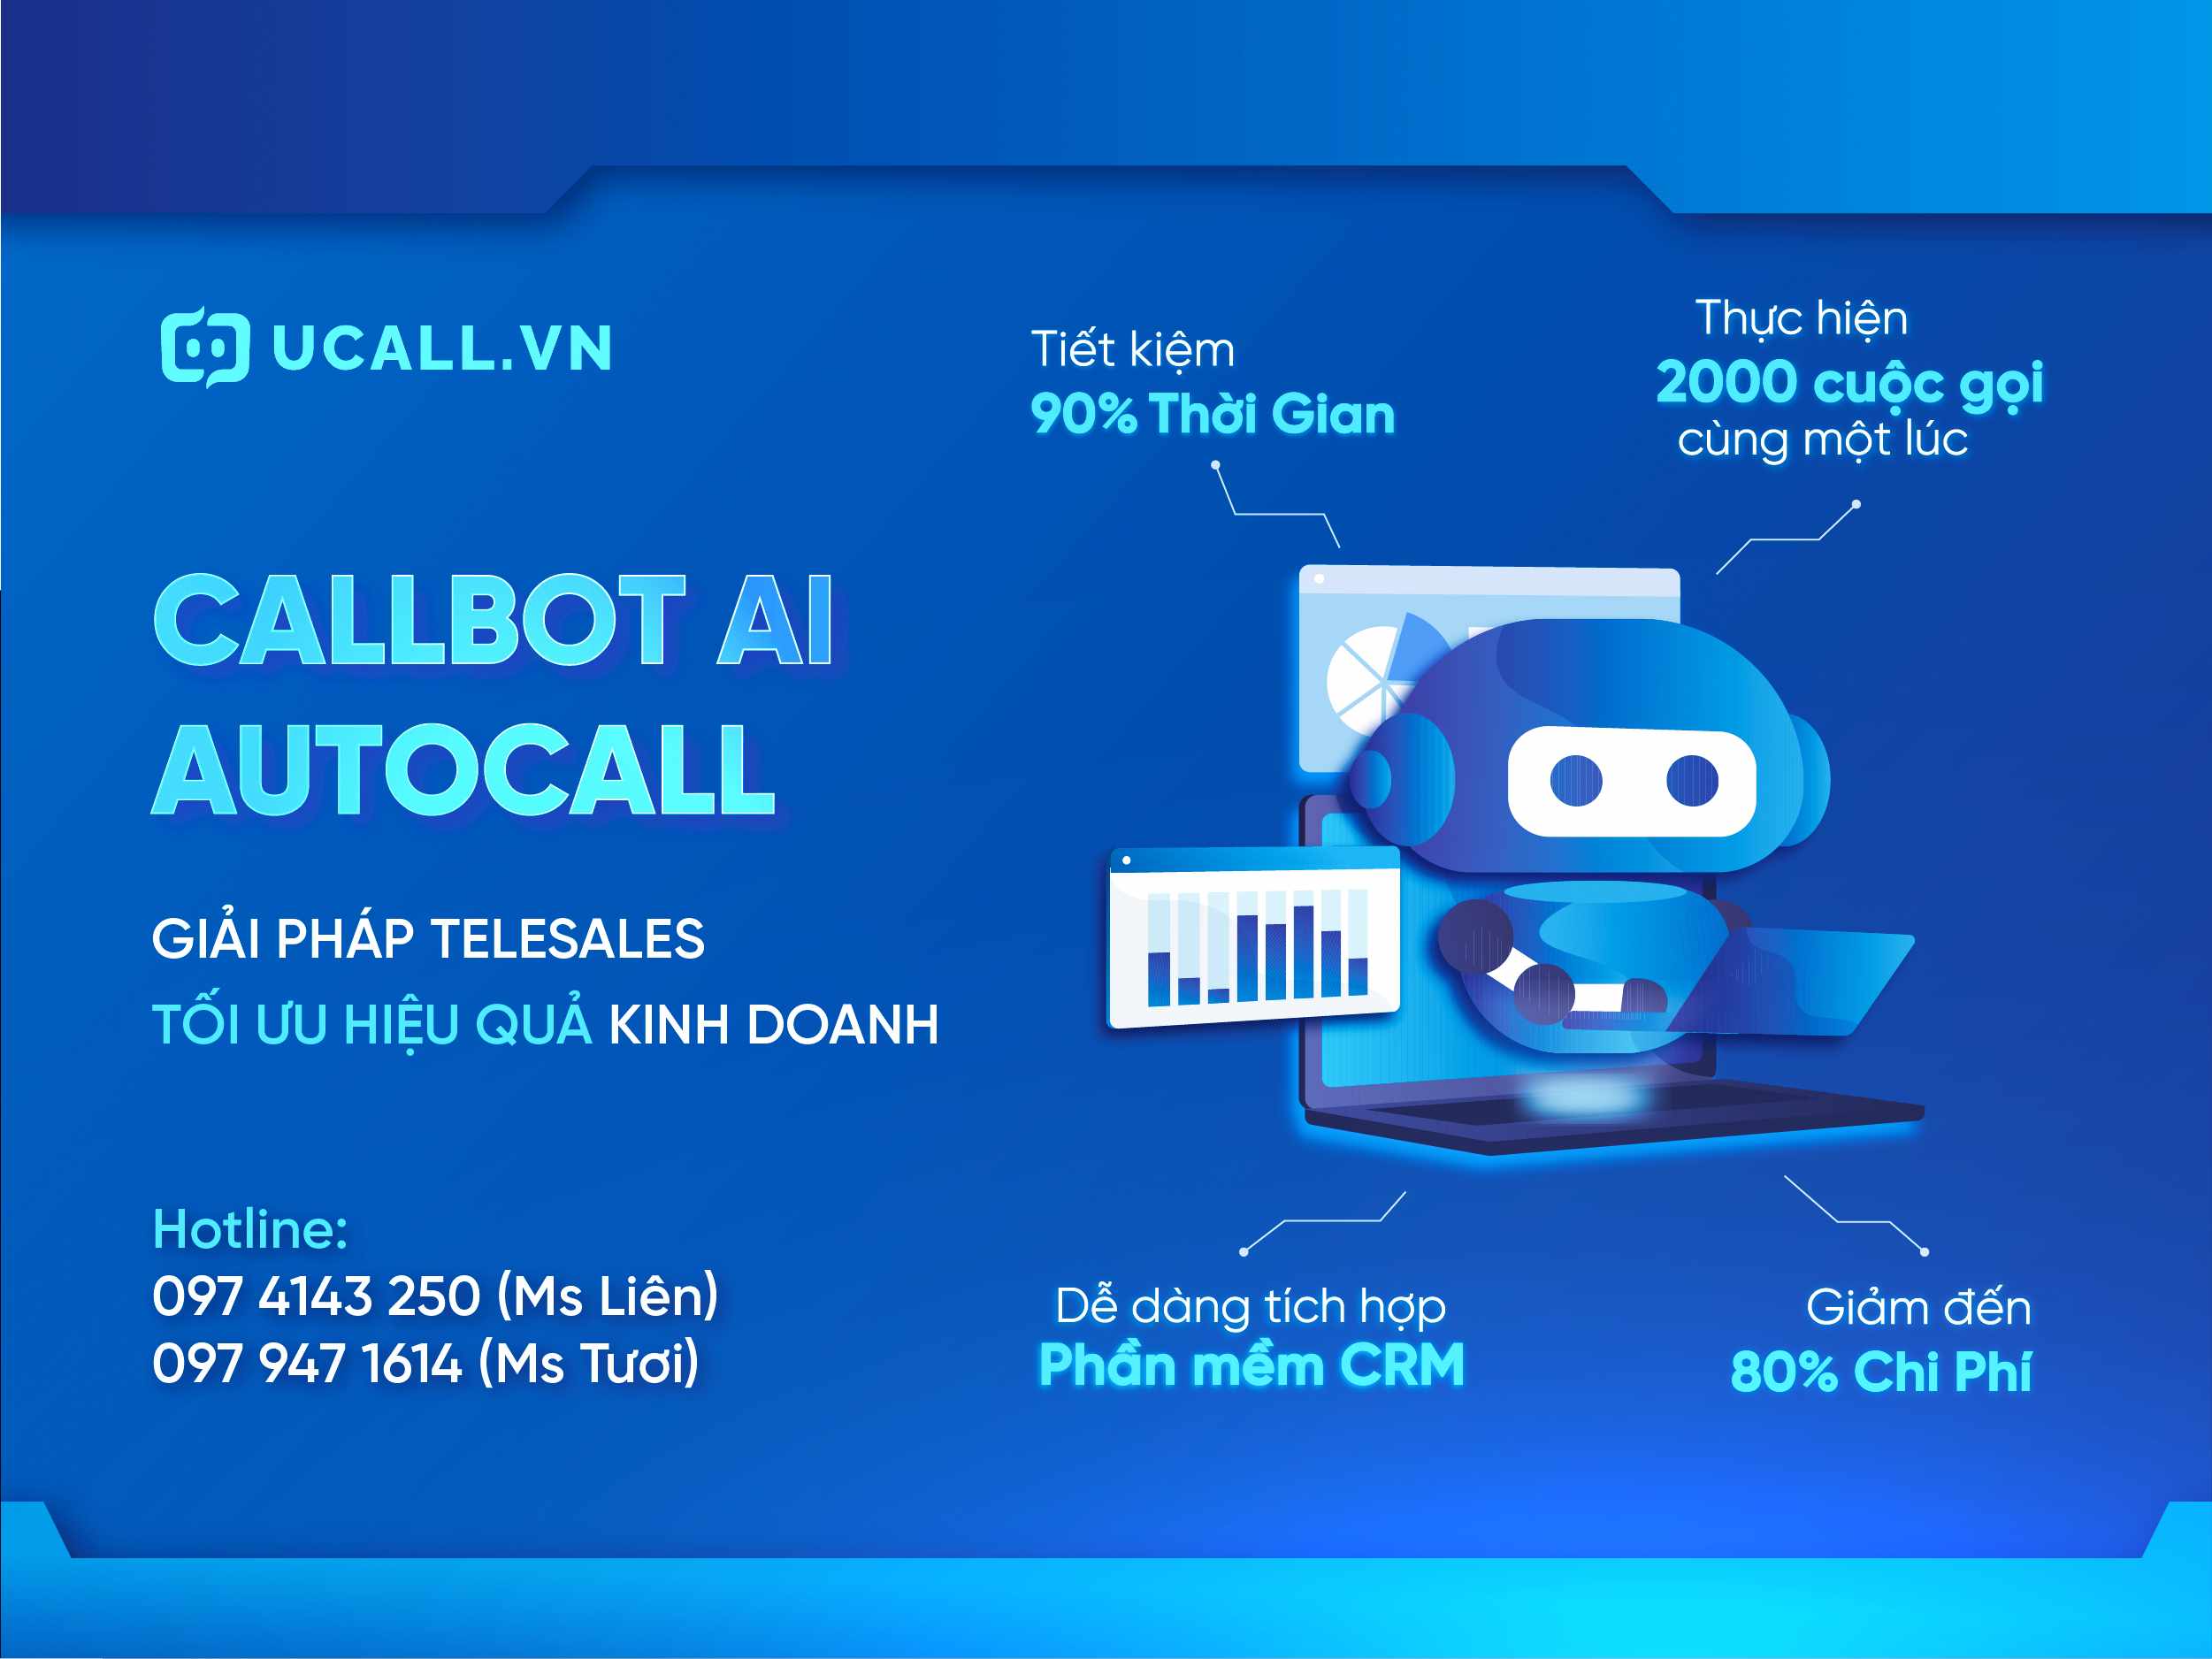 Callbot UCALL giúp hỗ trợ tối ưu trong các chương trình khuyến mãi